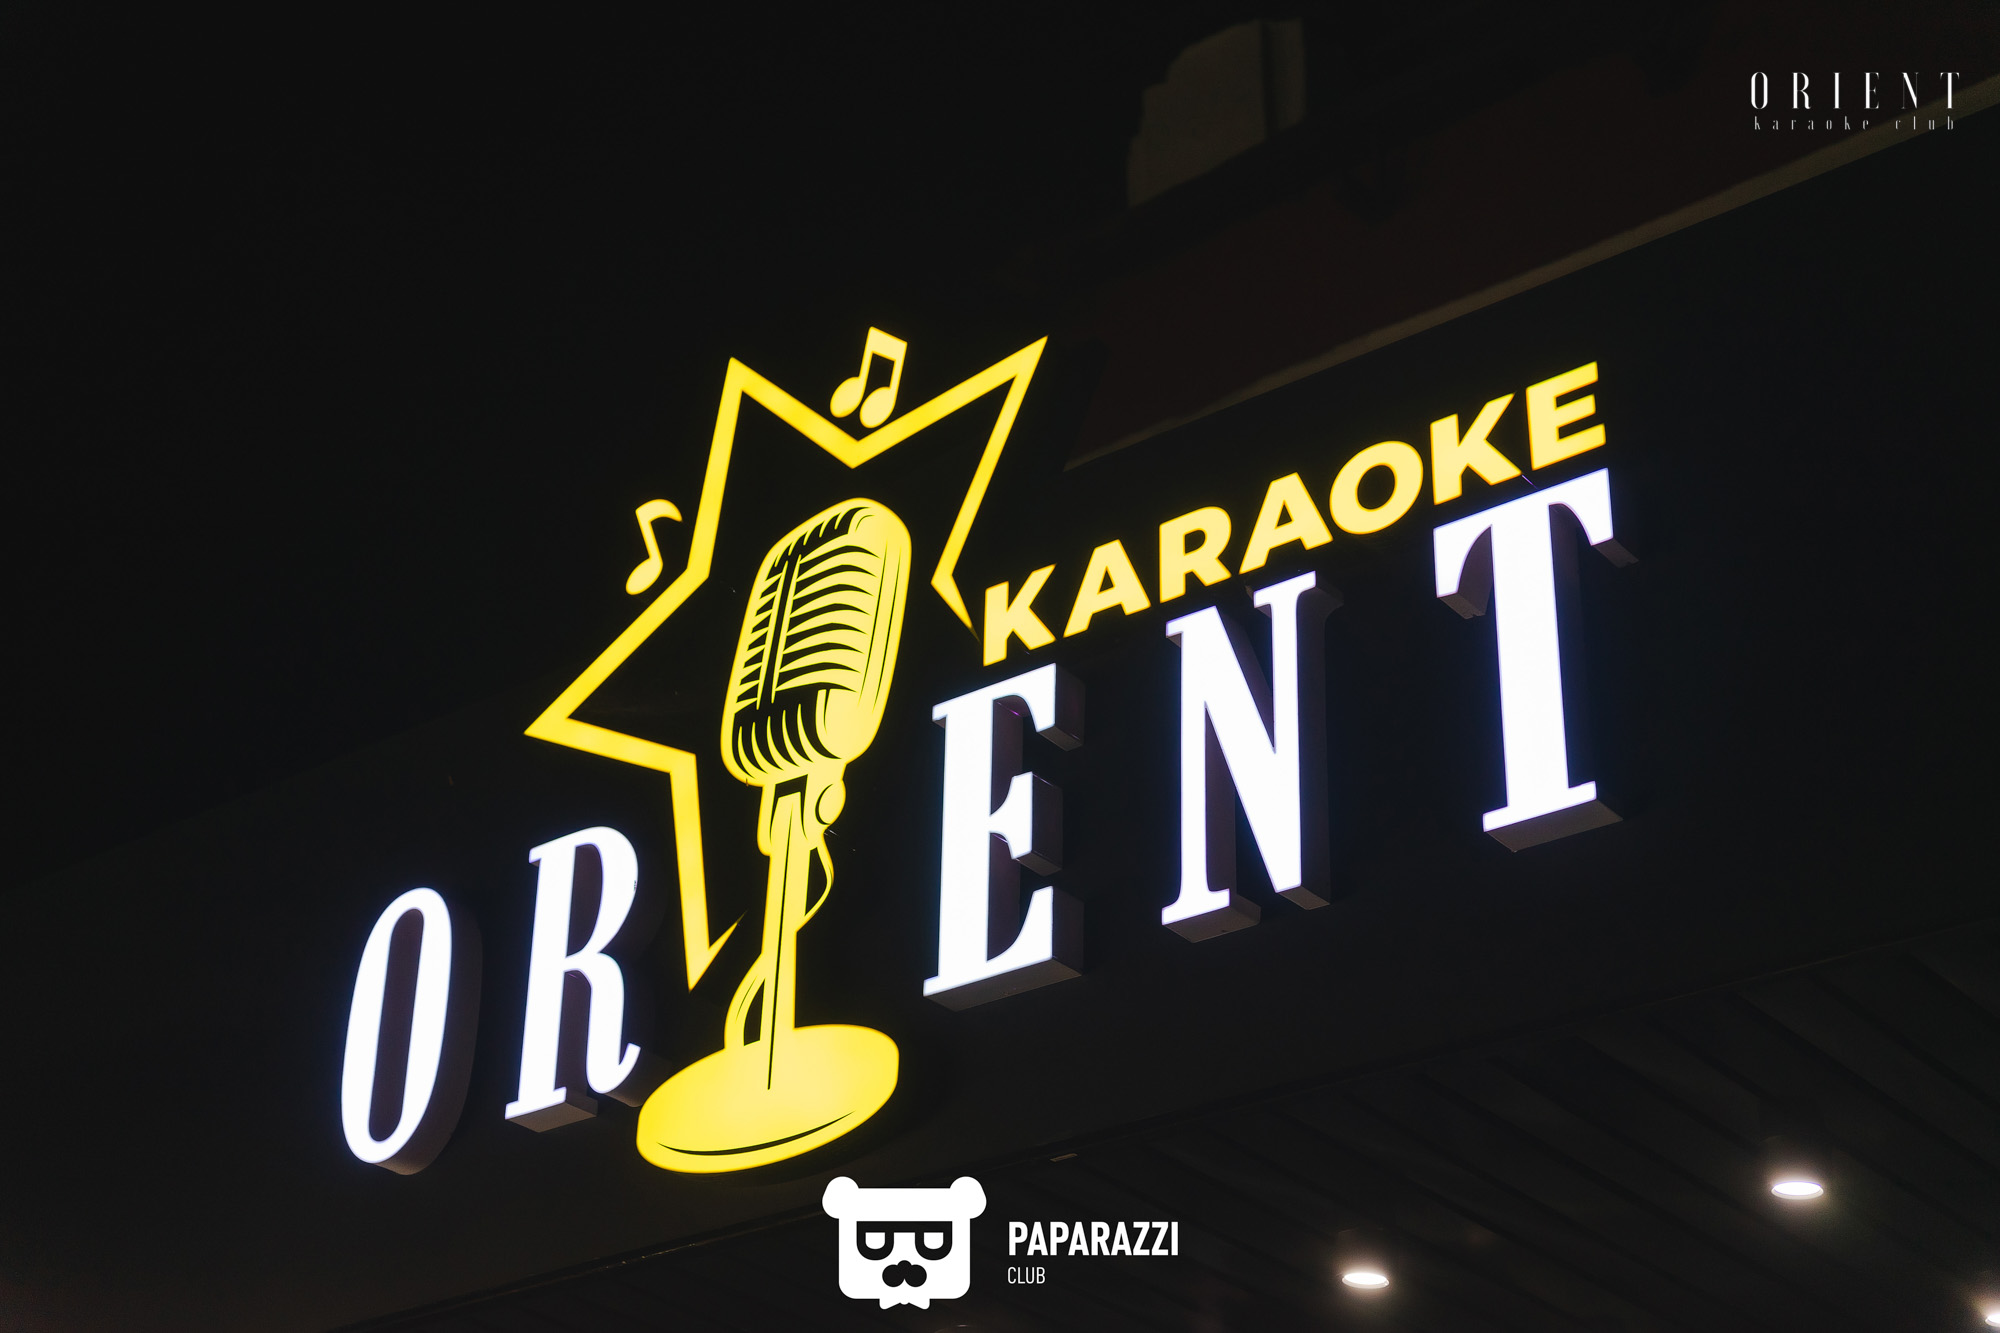 ORIENT Karaoke